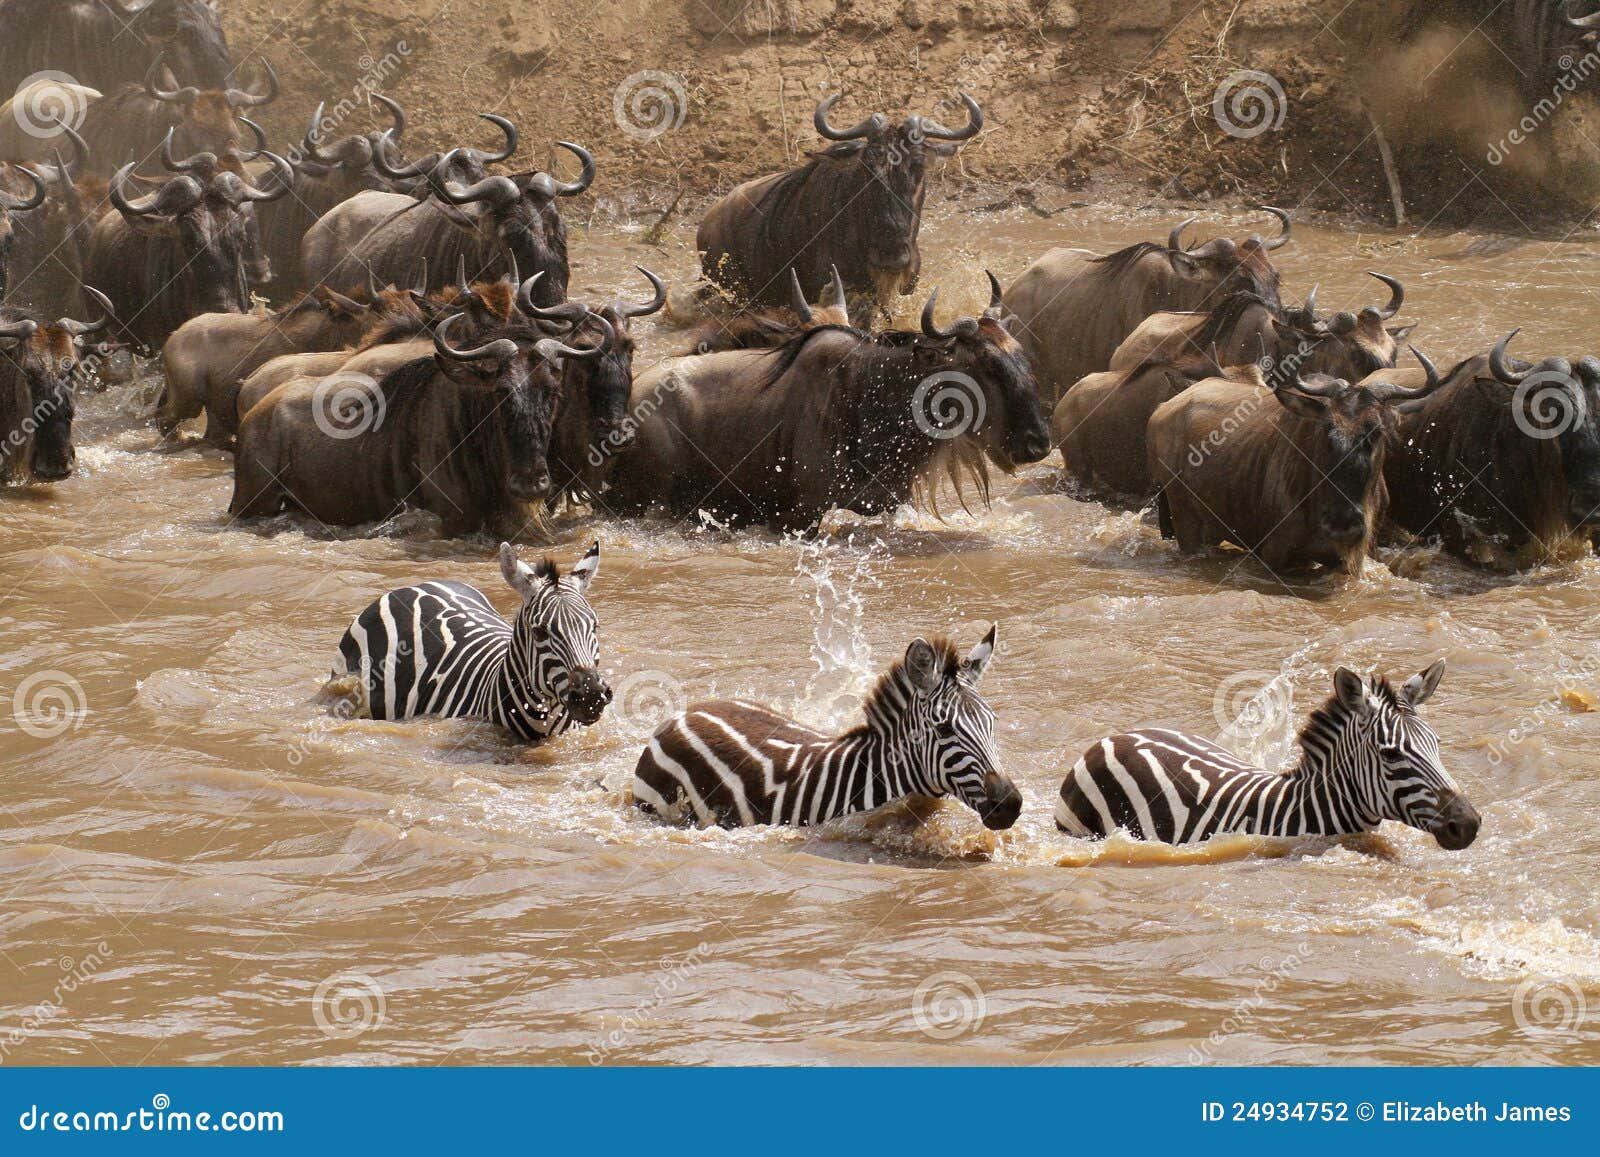 masai mara river crossing